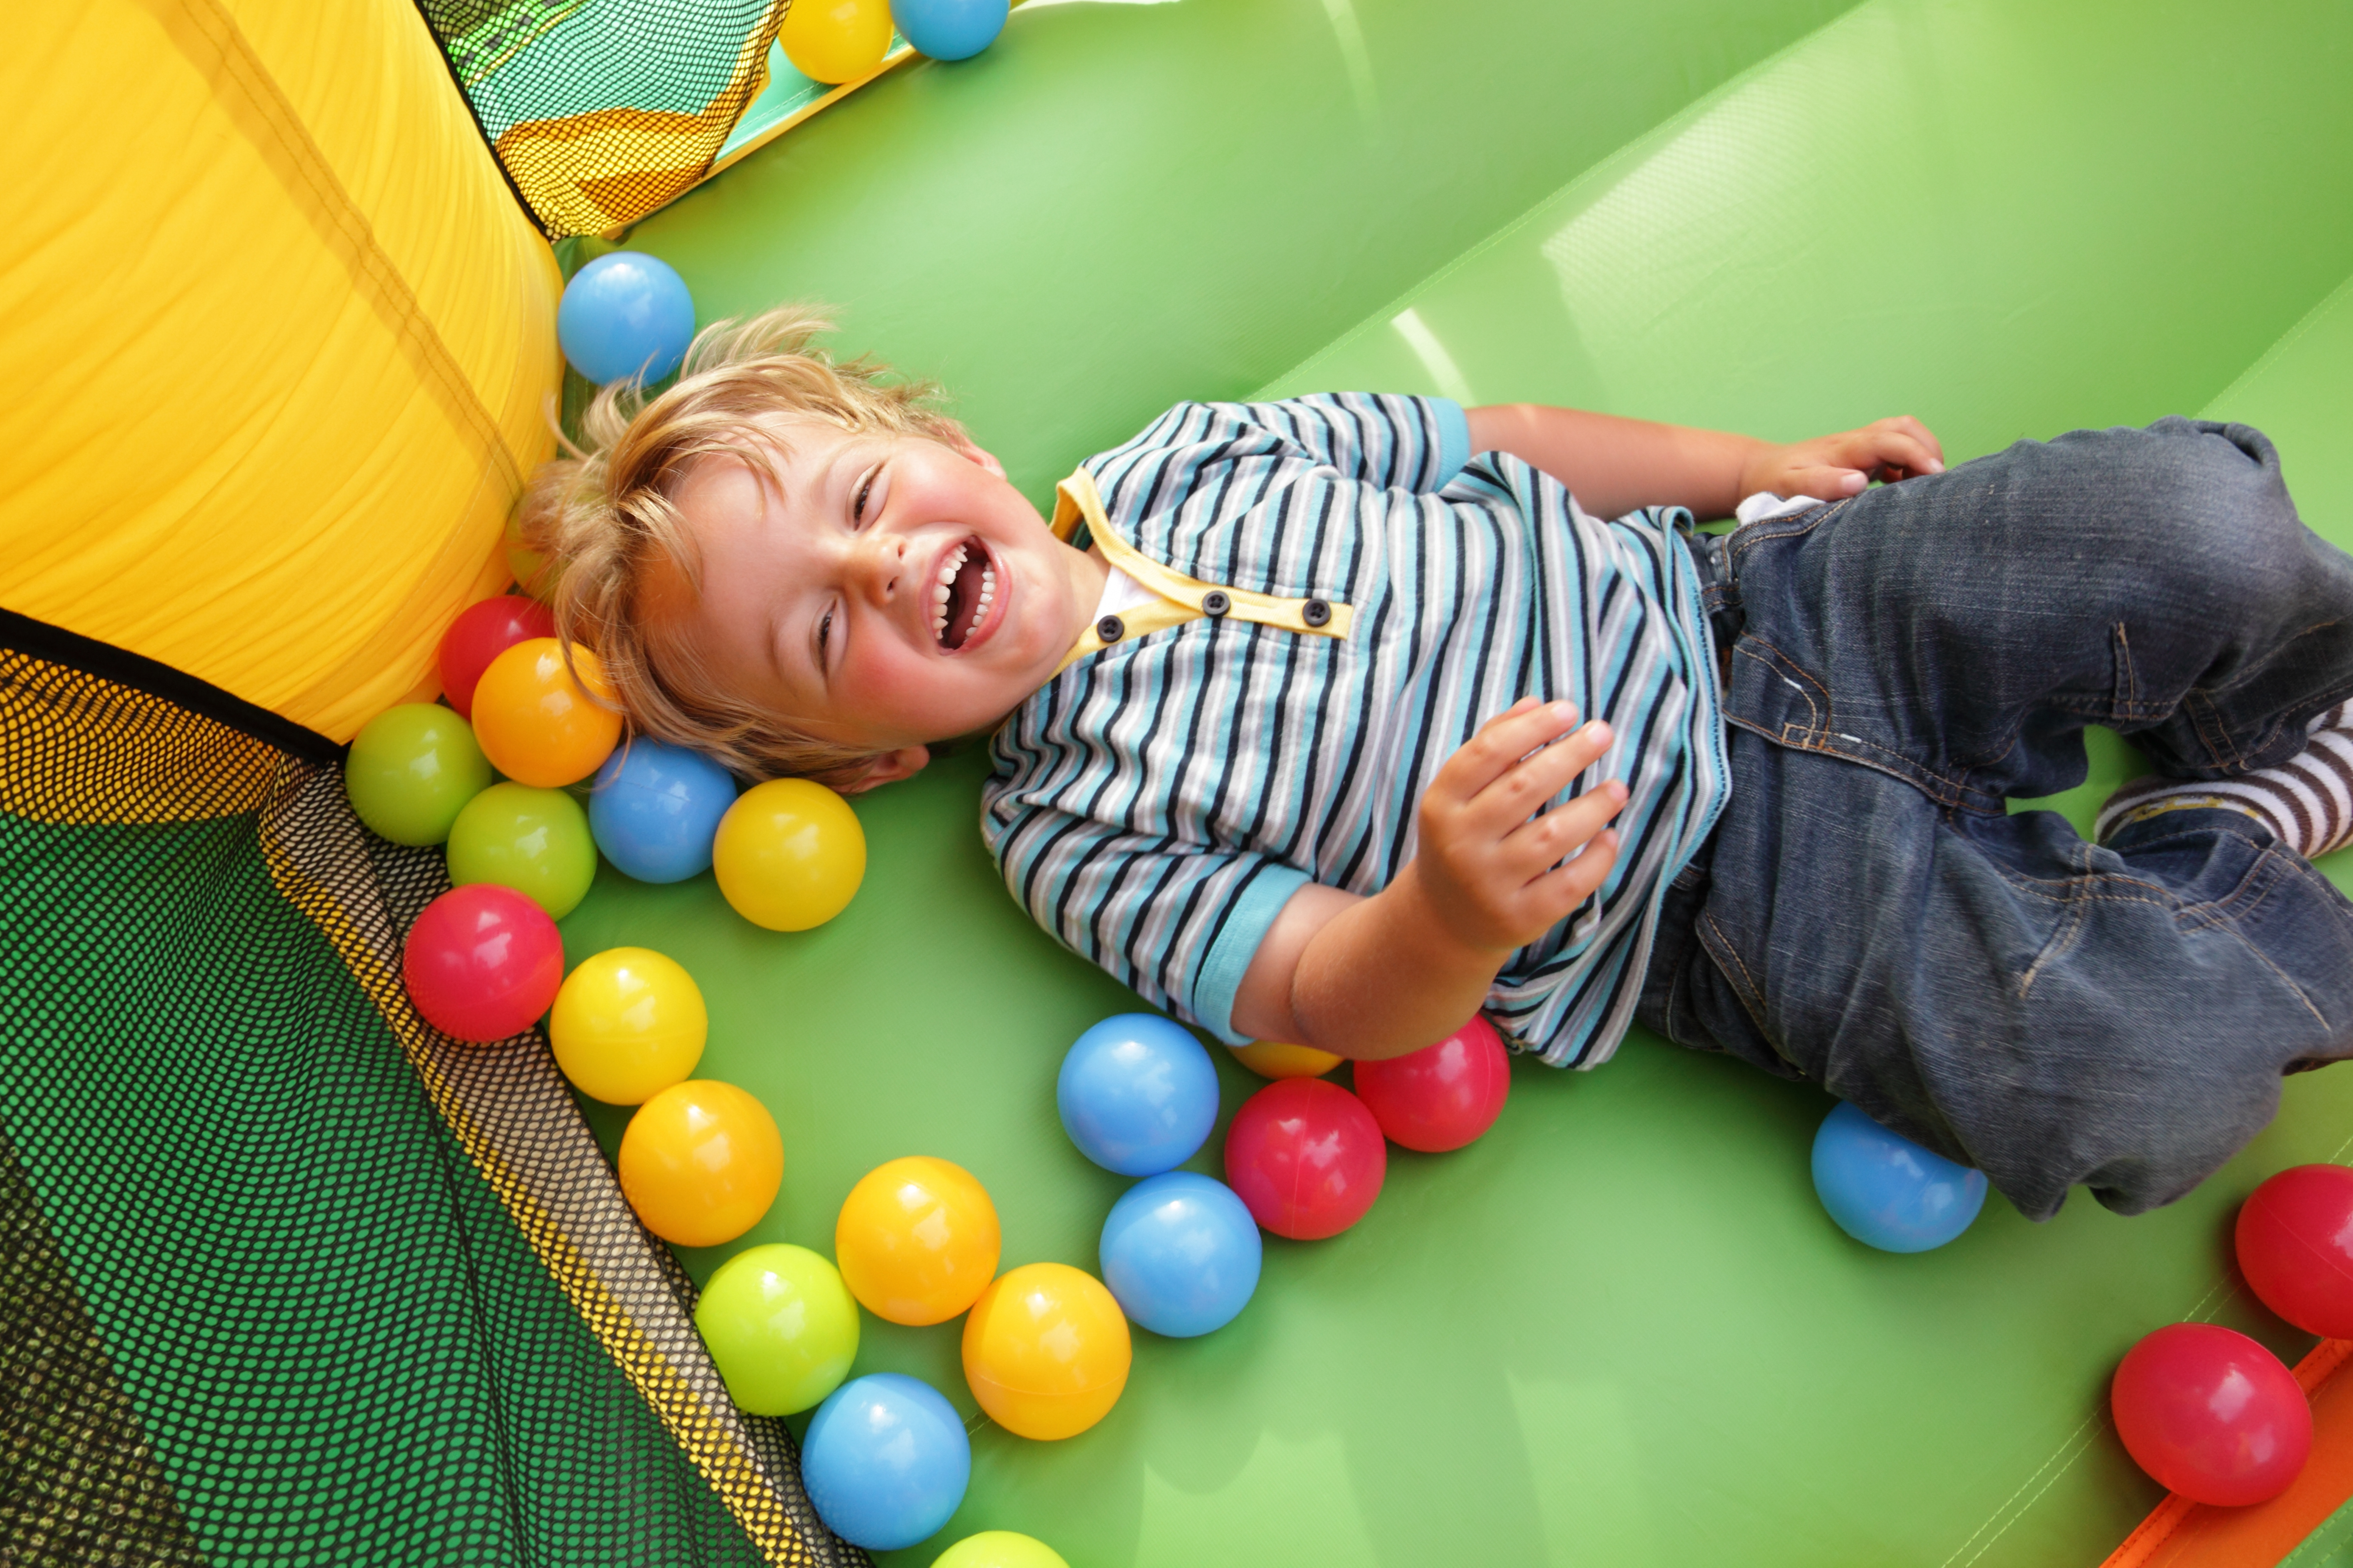 Niño de 3 años tumbado y riendo | Fuente: Shutterstock.com